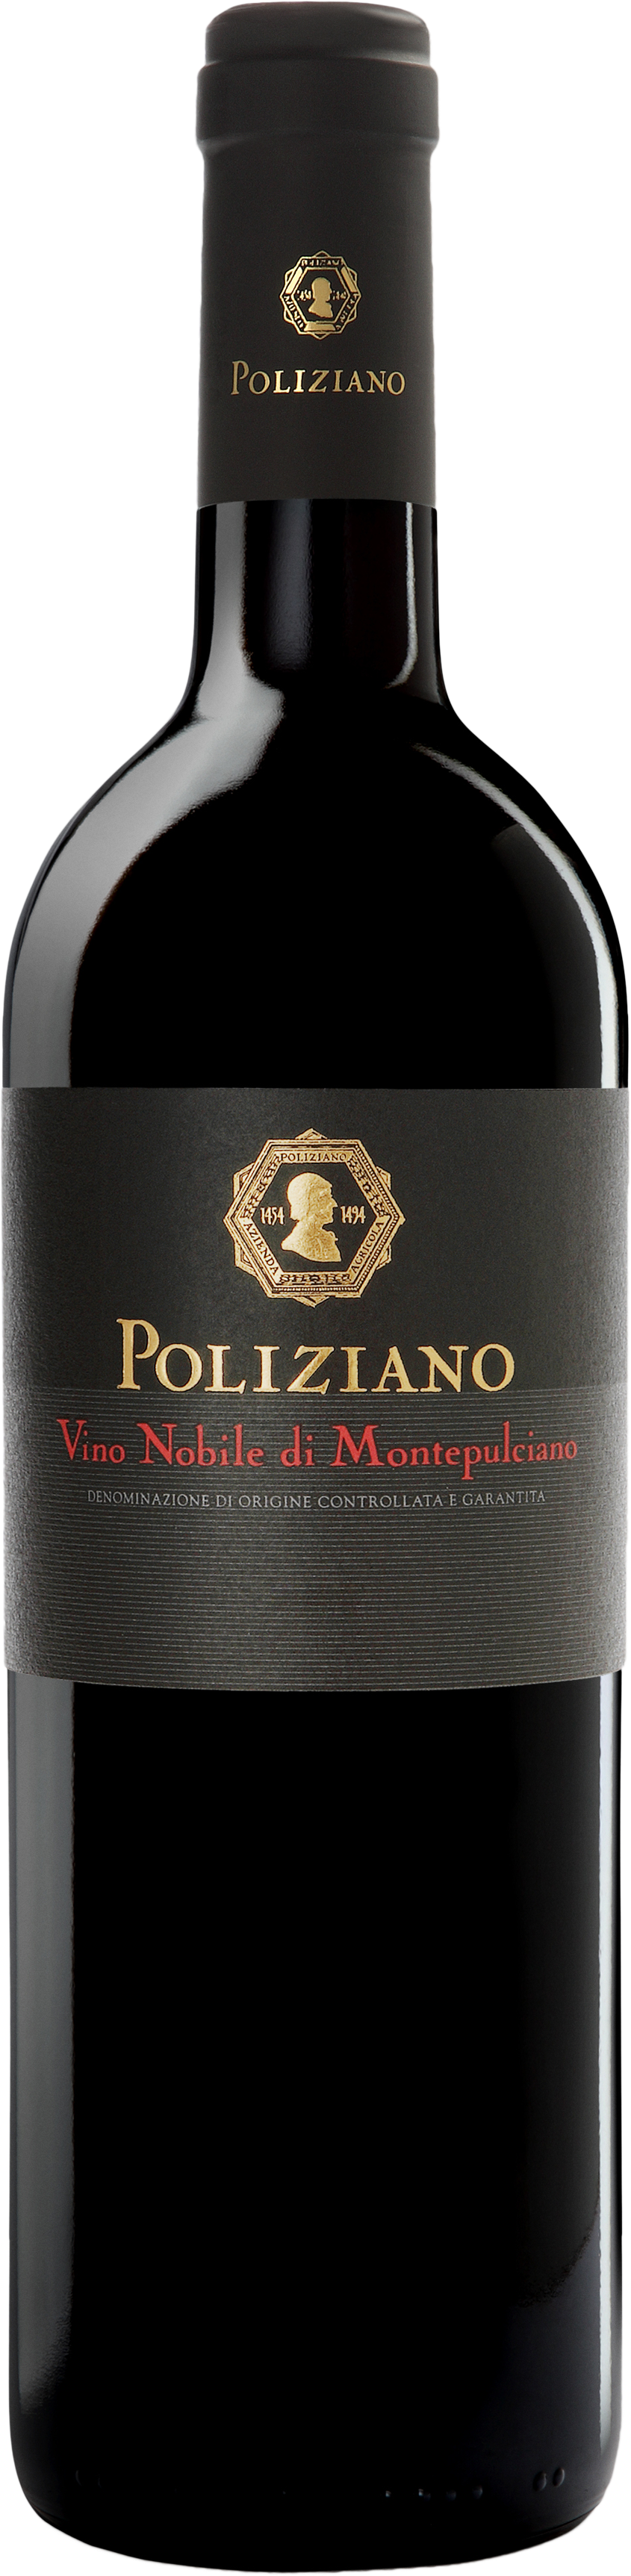 Poliziano Vino Nobile di Montepulciano docg 'Poliziano' 2020